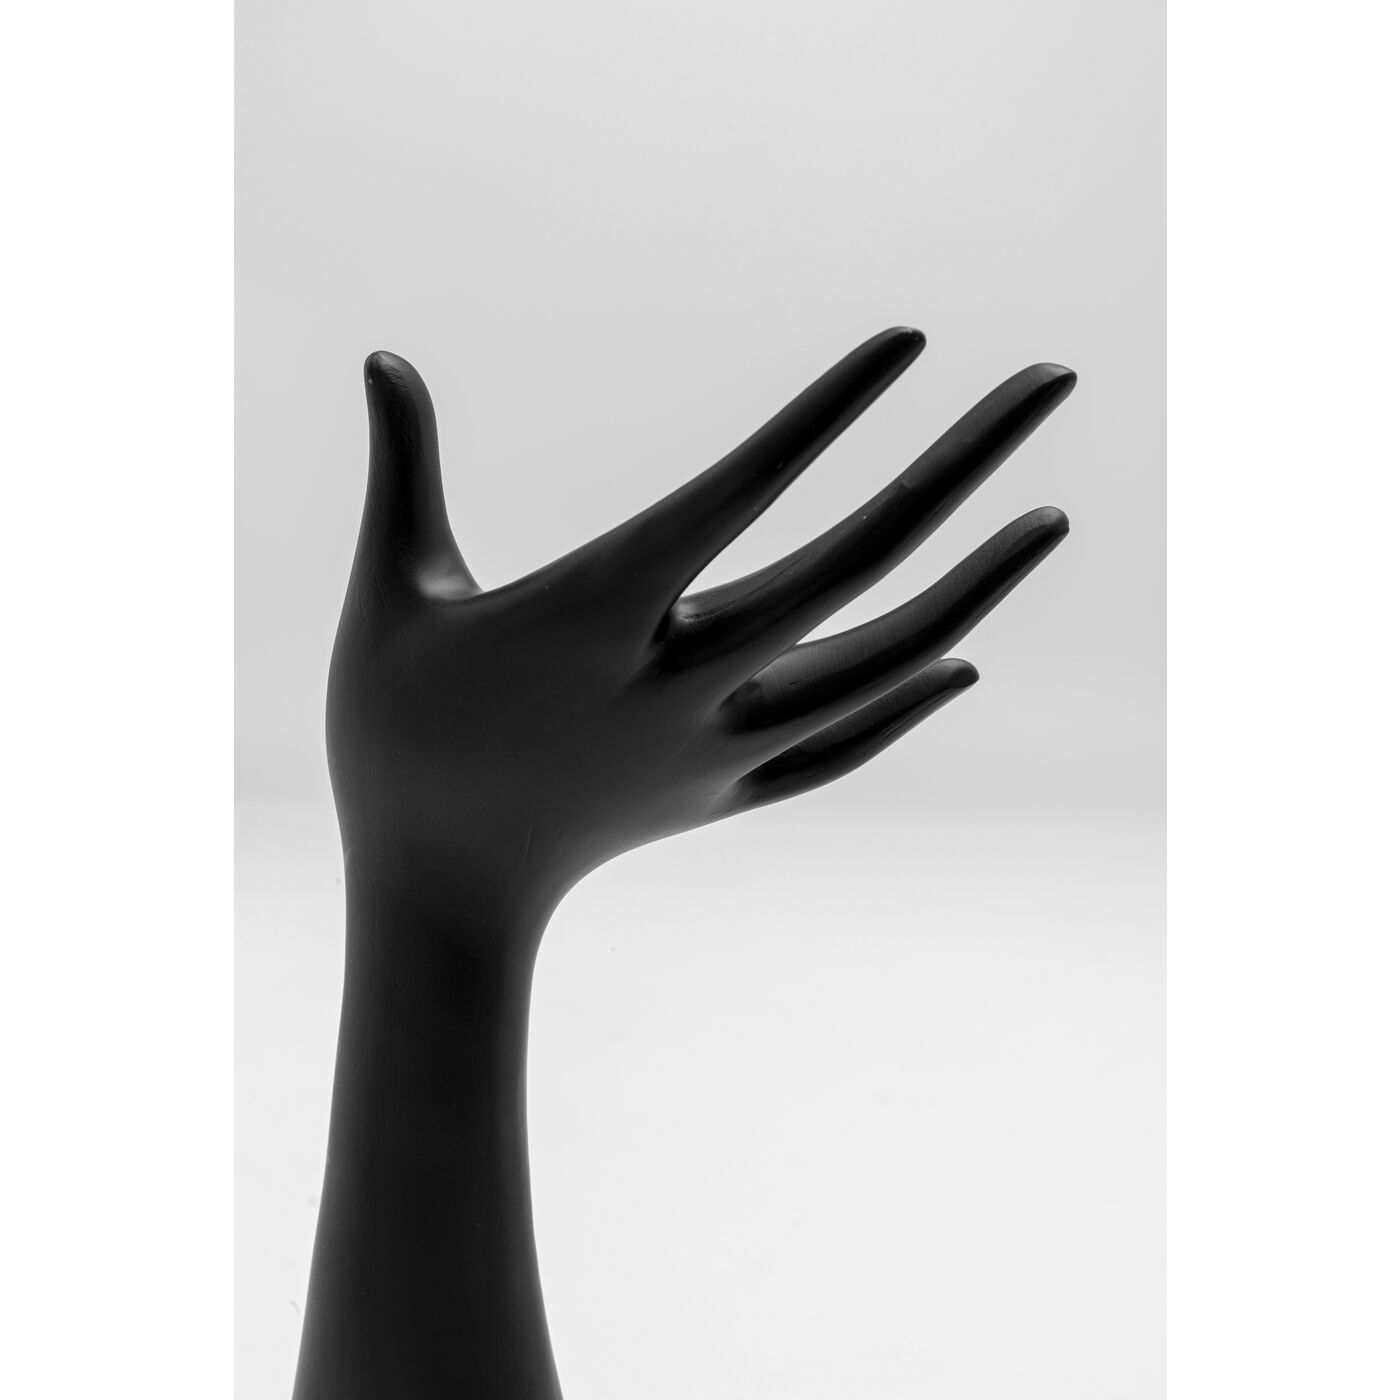 Черная рука для украшений. 34776 Декоративная рука "Servus Pop" 19 см Kare Desing. Подставка для дизайна фотошопа.